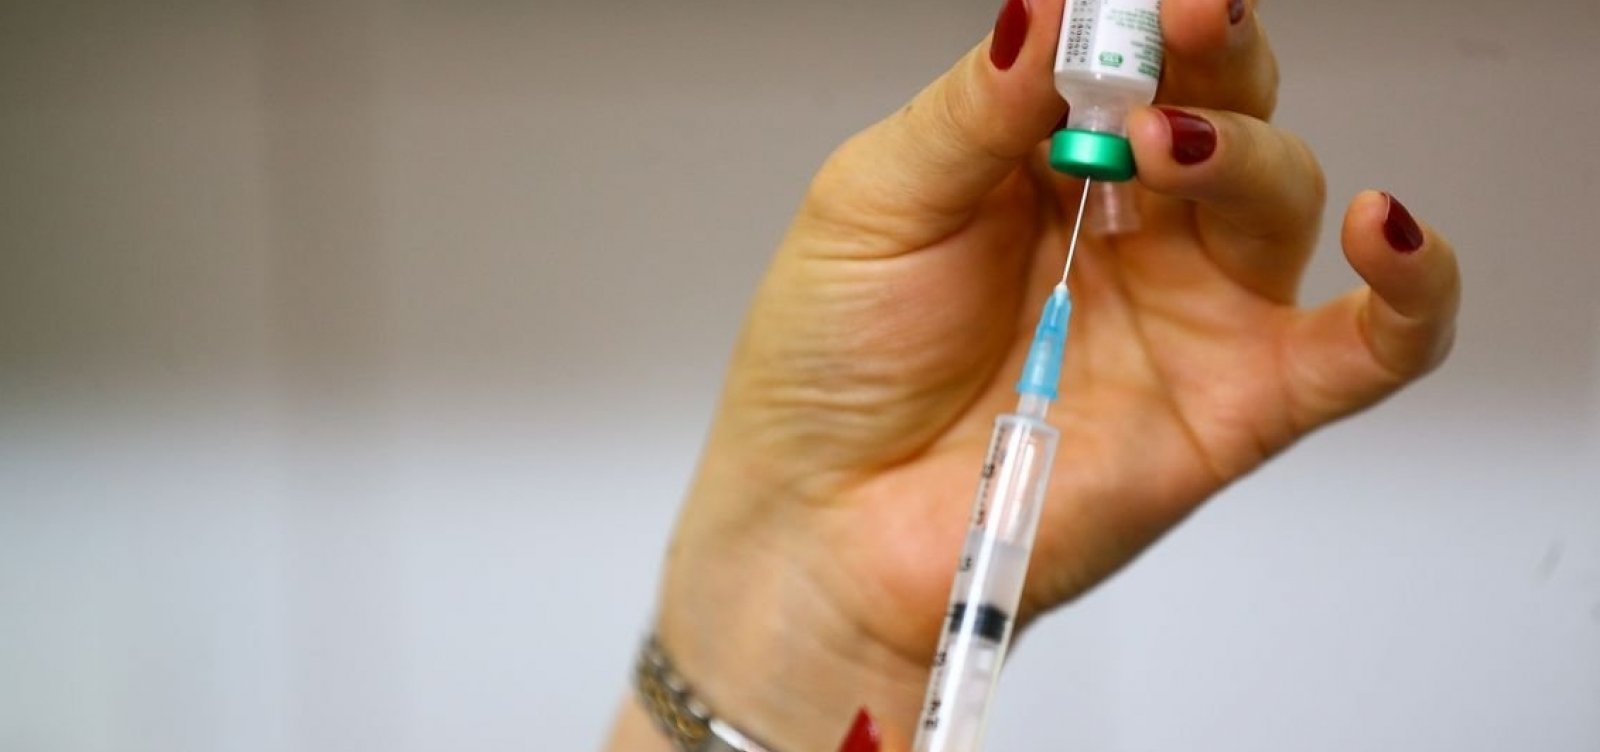 Prefeitura convoca à vacinação de crianças contra sarampo